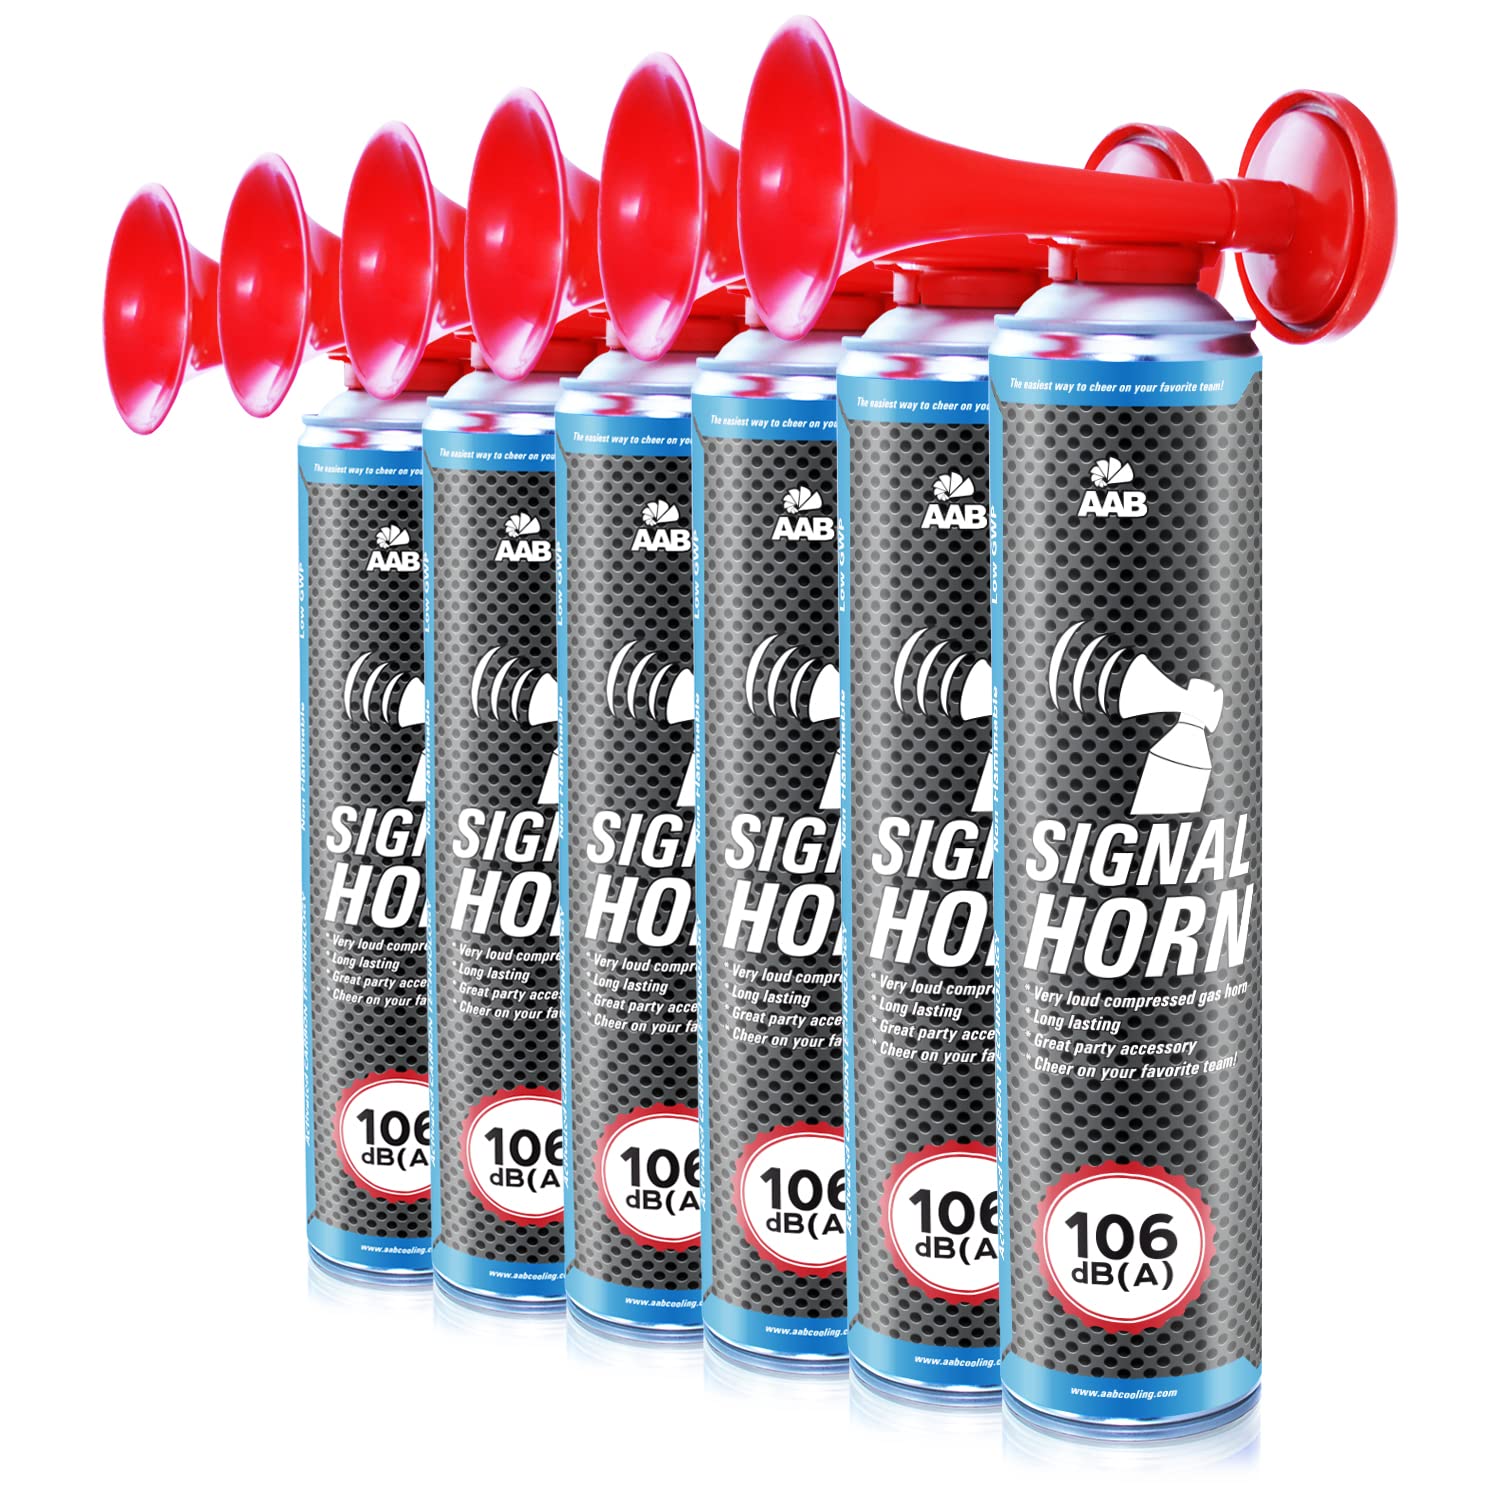 6 x AAB Signal Horn – Laut Nebelhorn 106 dB(A) Mit Nicht Brennbarem Gas, Bis Zu 320 Kurze Pieptöne, Fanfare, Fußball Airhorn, Gasfanfare, Pressluft Luftdruck Tröte, Drucklufthupe von AABCOOLING